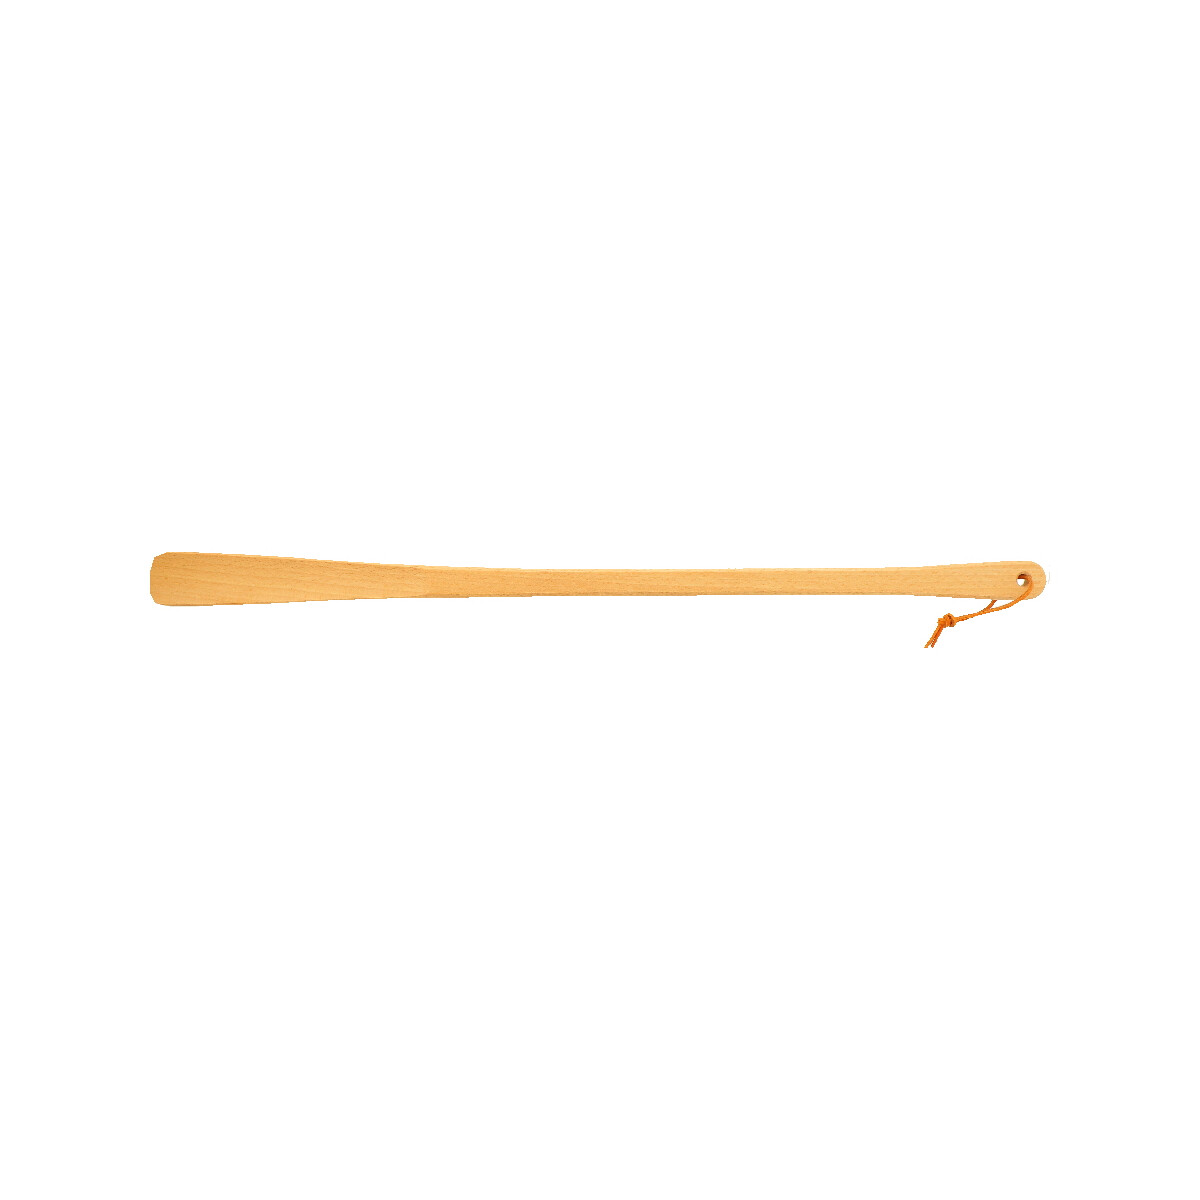 Schuhlöffel lang mit Lederband Buchenholz 63 cm